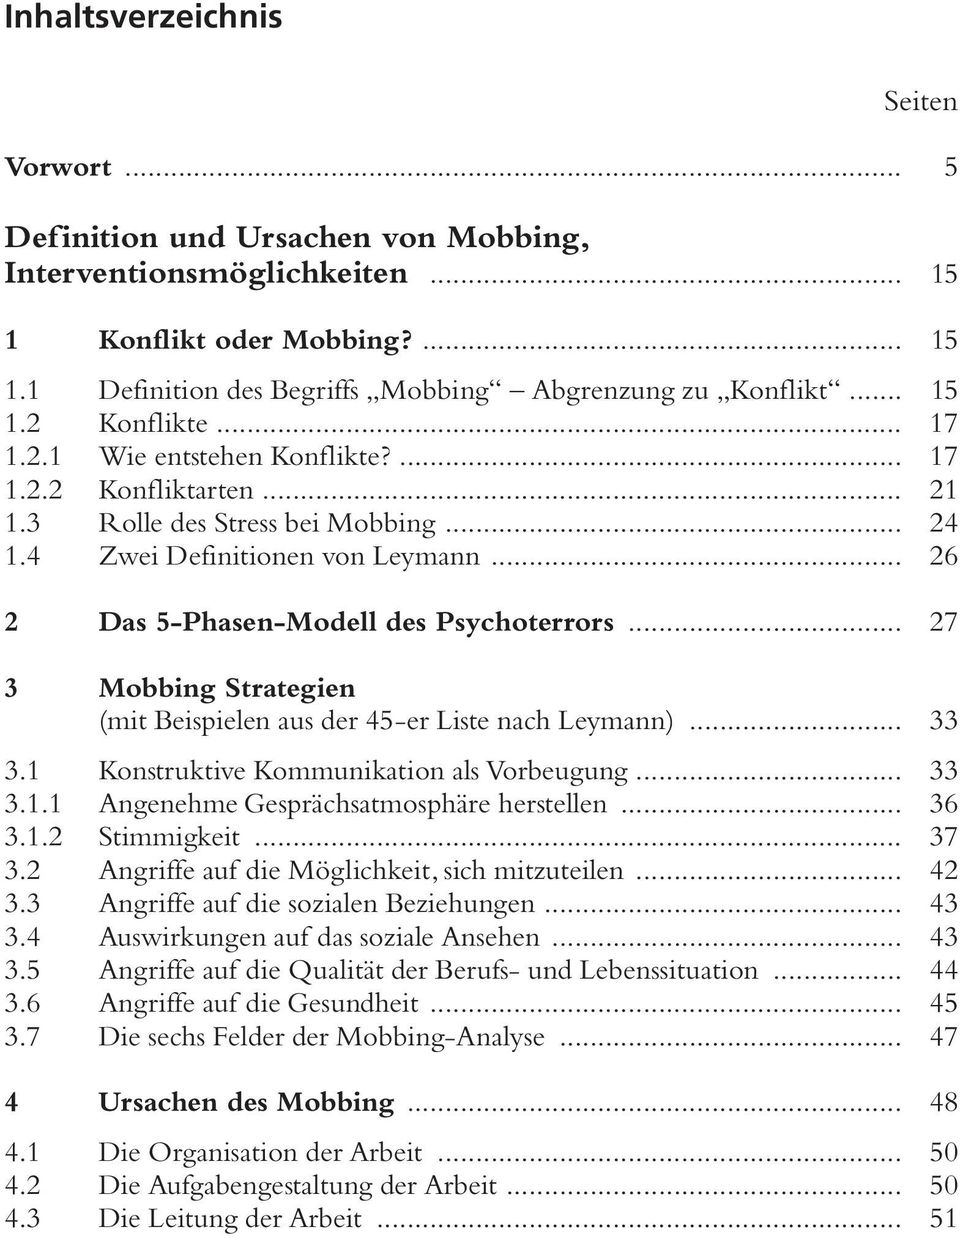 .. 26 2 Das 5-Phasen-Modell des Psychoterrors... 27 3 Mobbing Strategien (mit Beispielen aus der 45-er Liste nach Leymann)... 33 3.1 Konstruktive Kommunikation als Vorbeugung... 33 3.1.1 Angenehme Gesprächsatmosphäre herstellen.